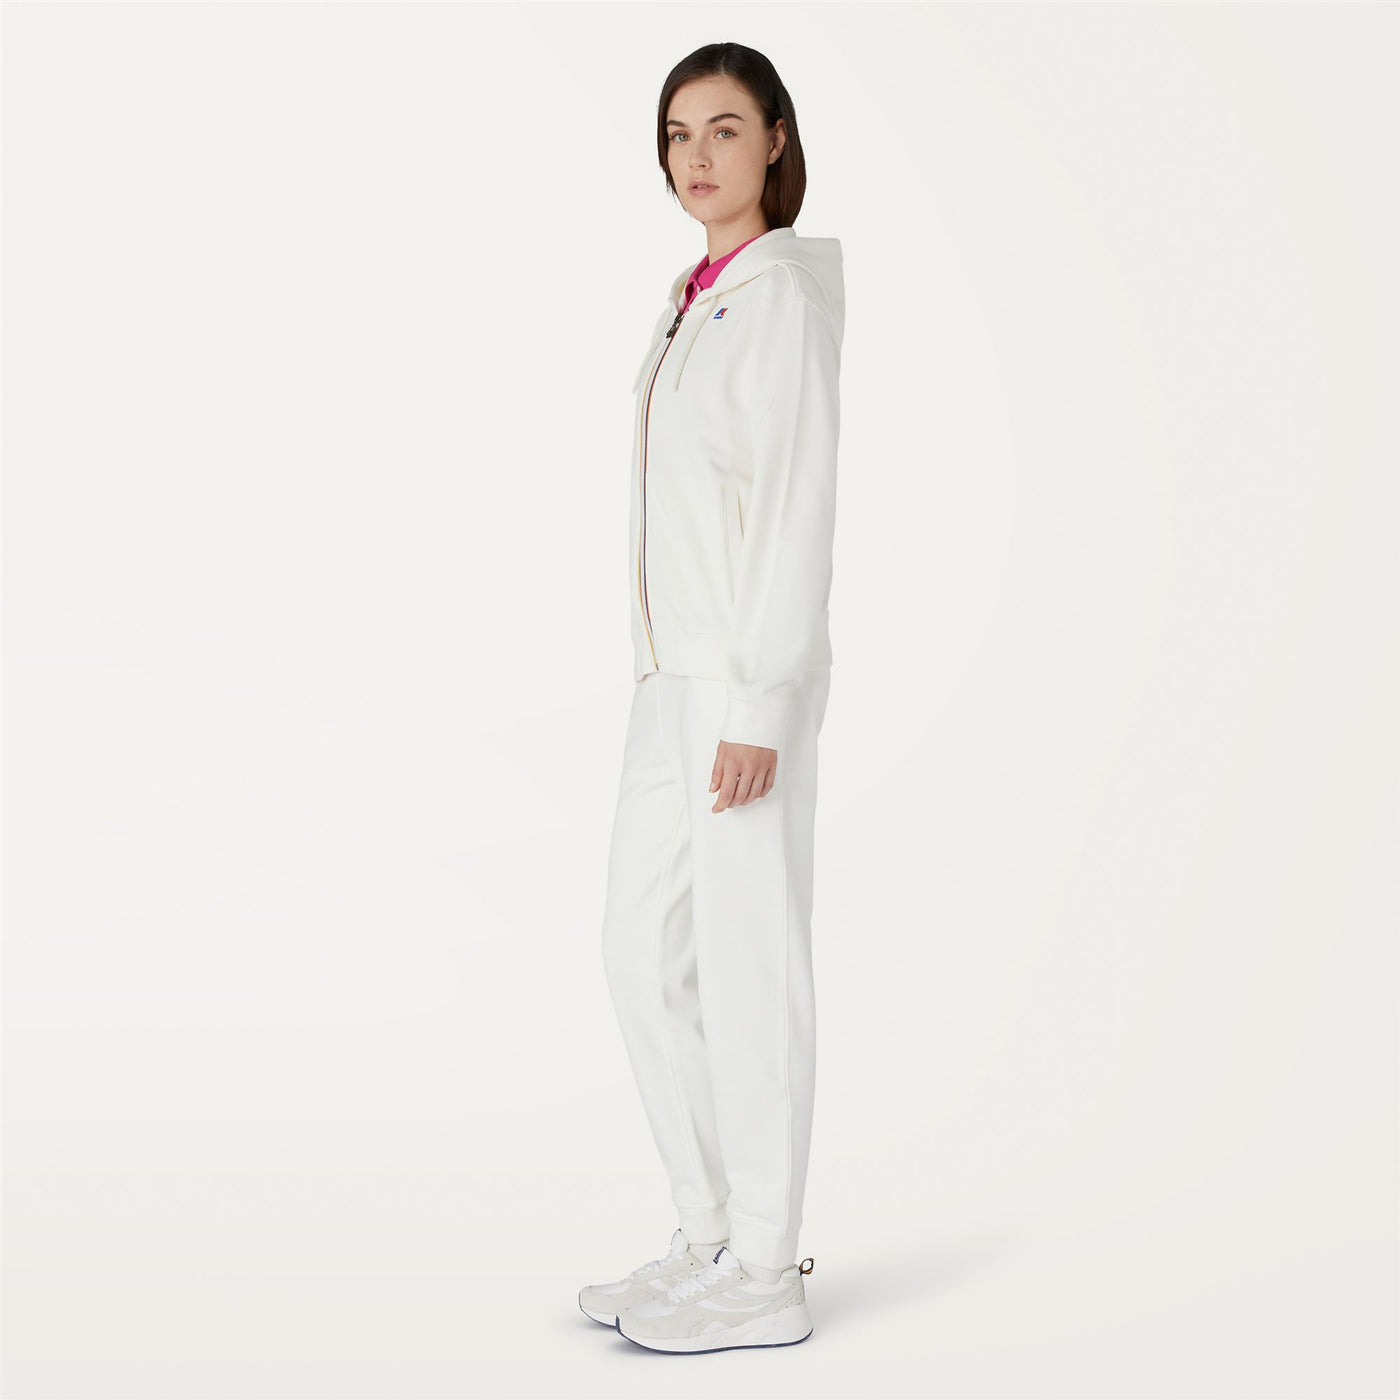 Fleece Woman OLYMPIANNE Jacket WHITE Detail (jpg Rgb)			